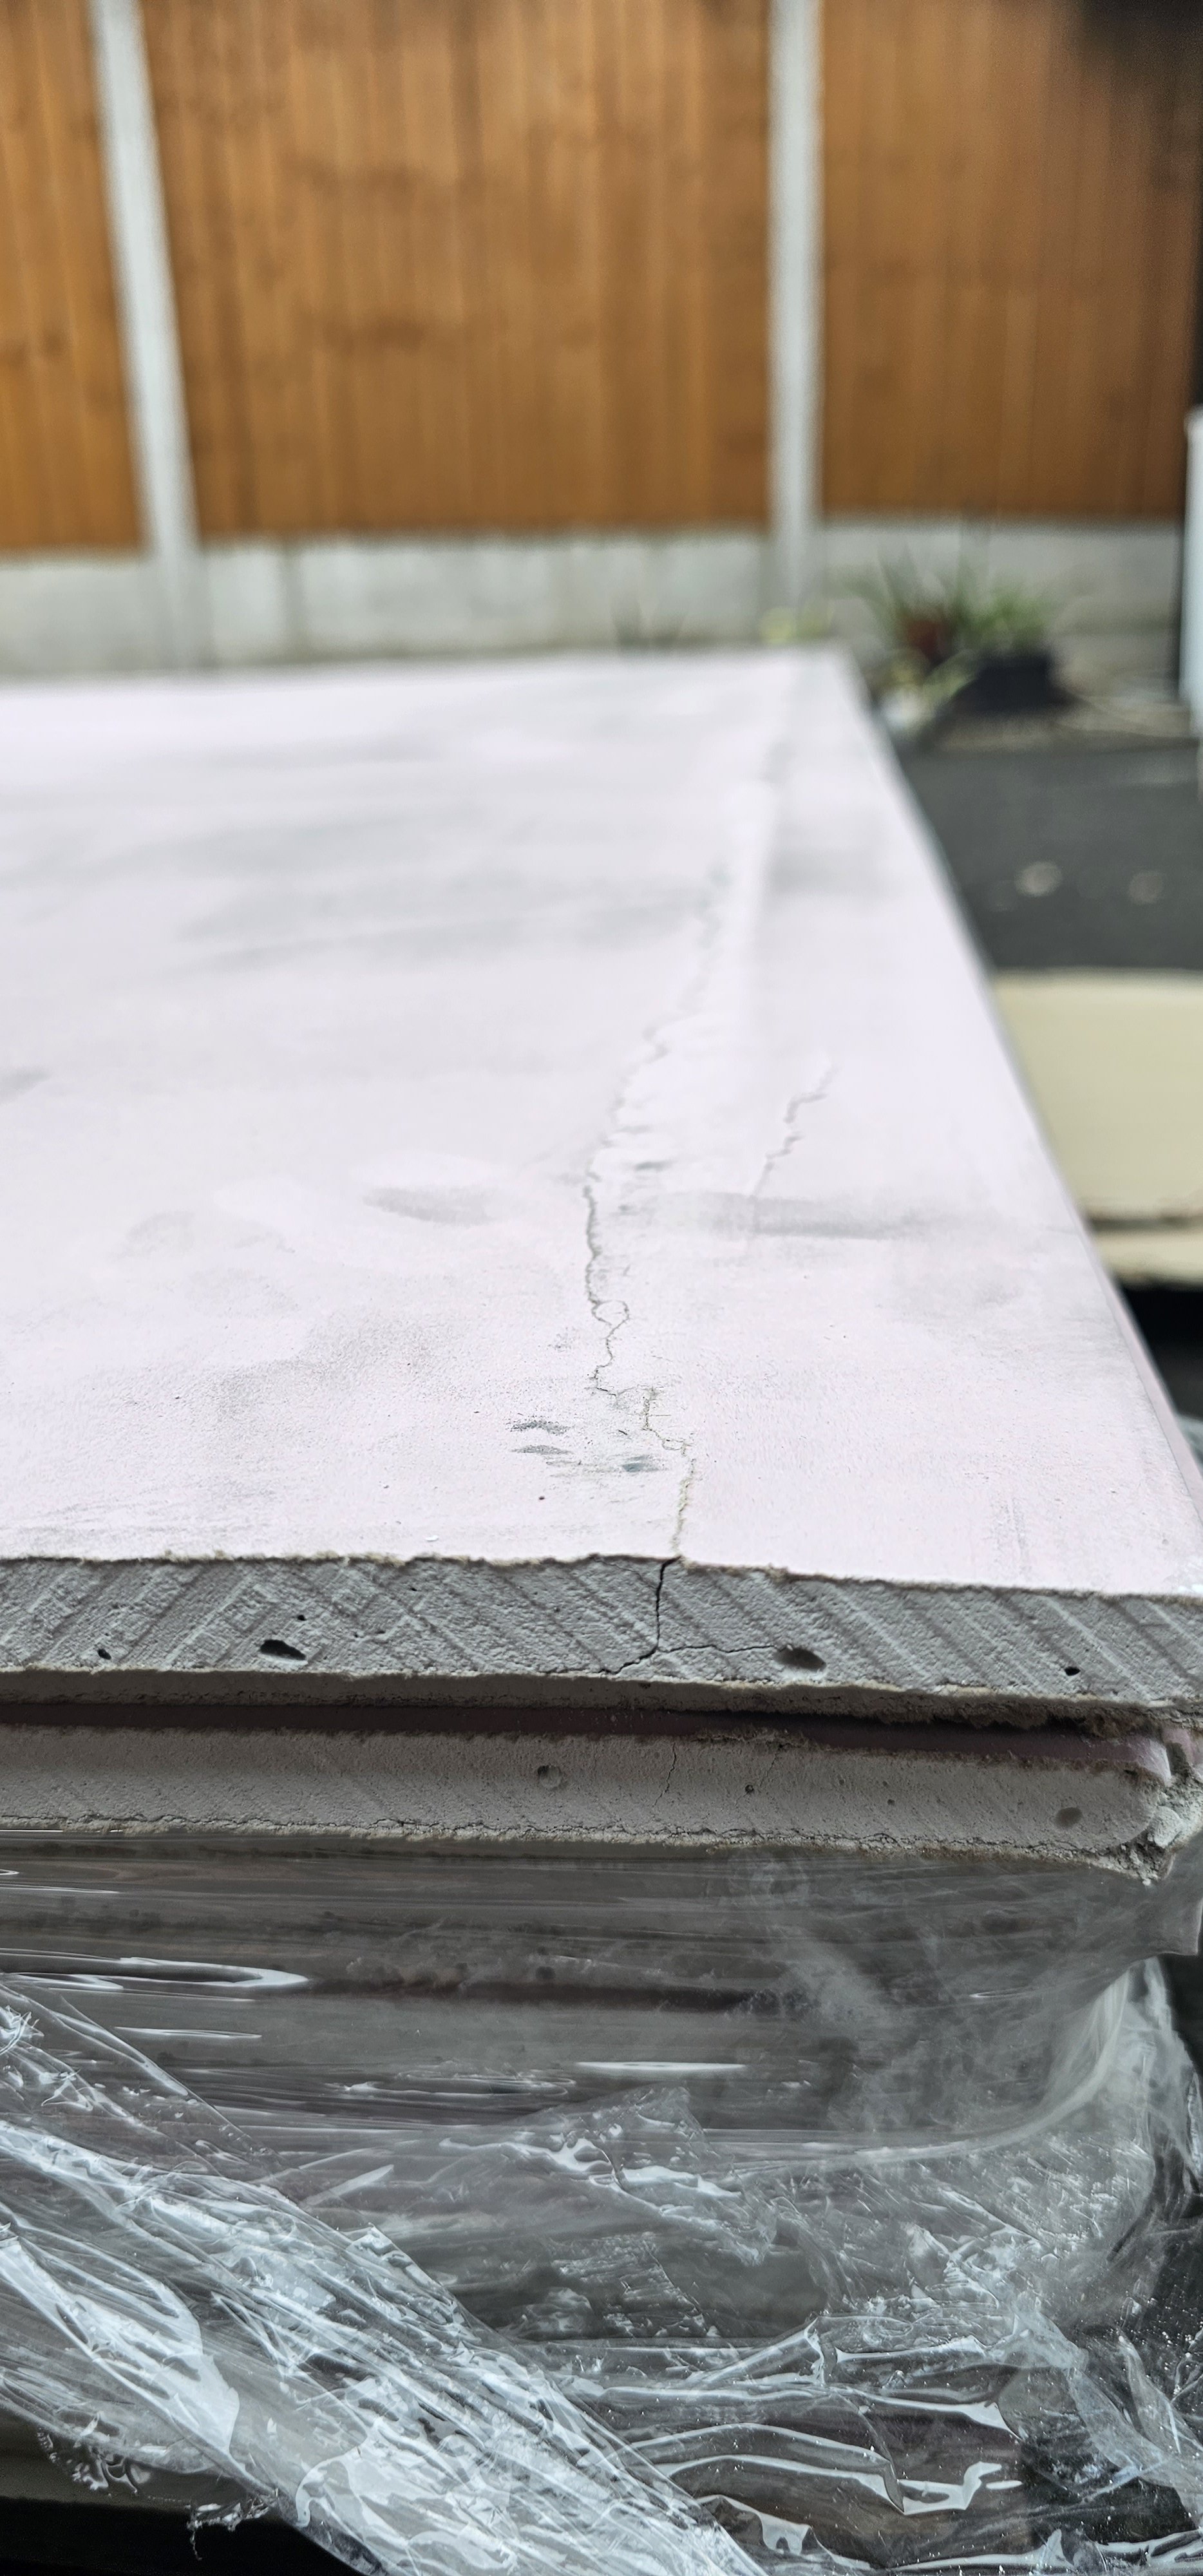 Plasterboard delivered with cracks - should it be sent back?